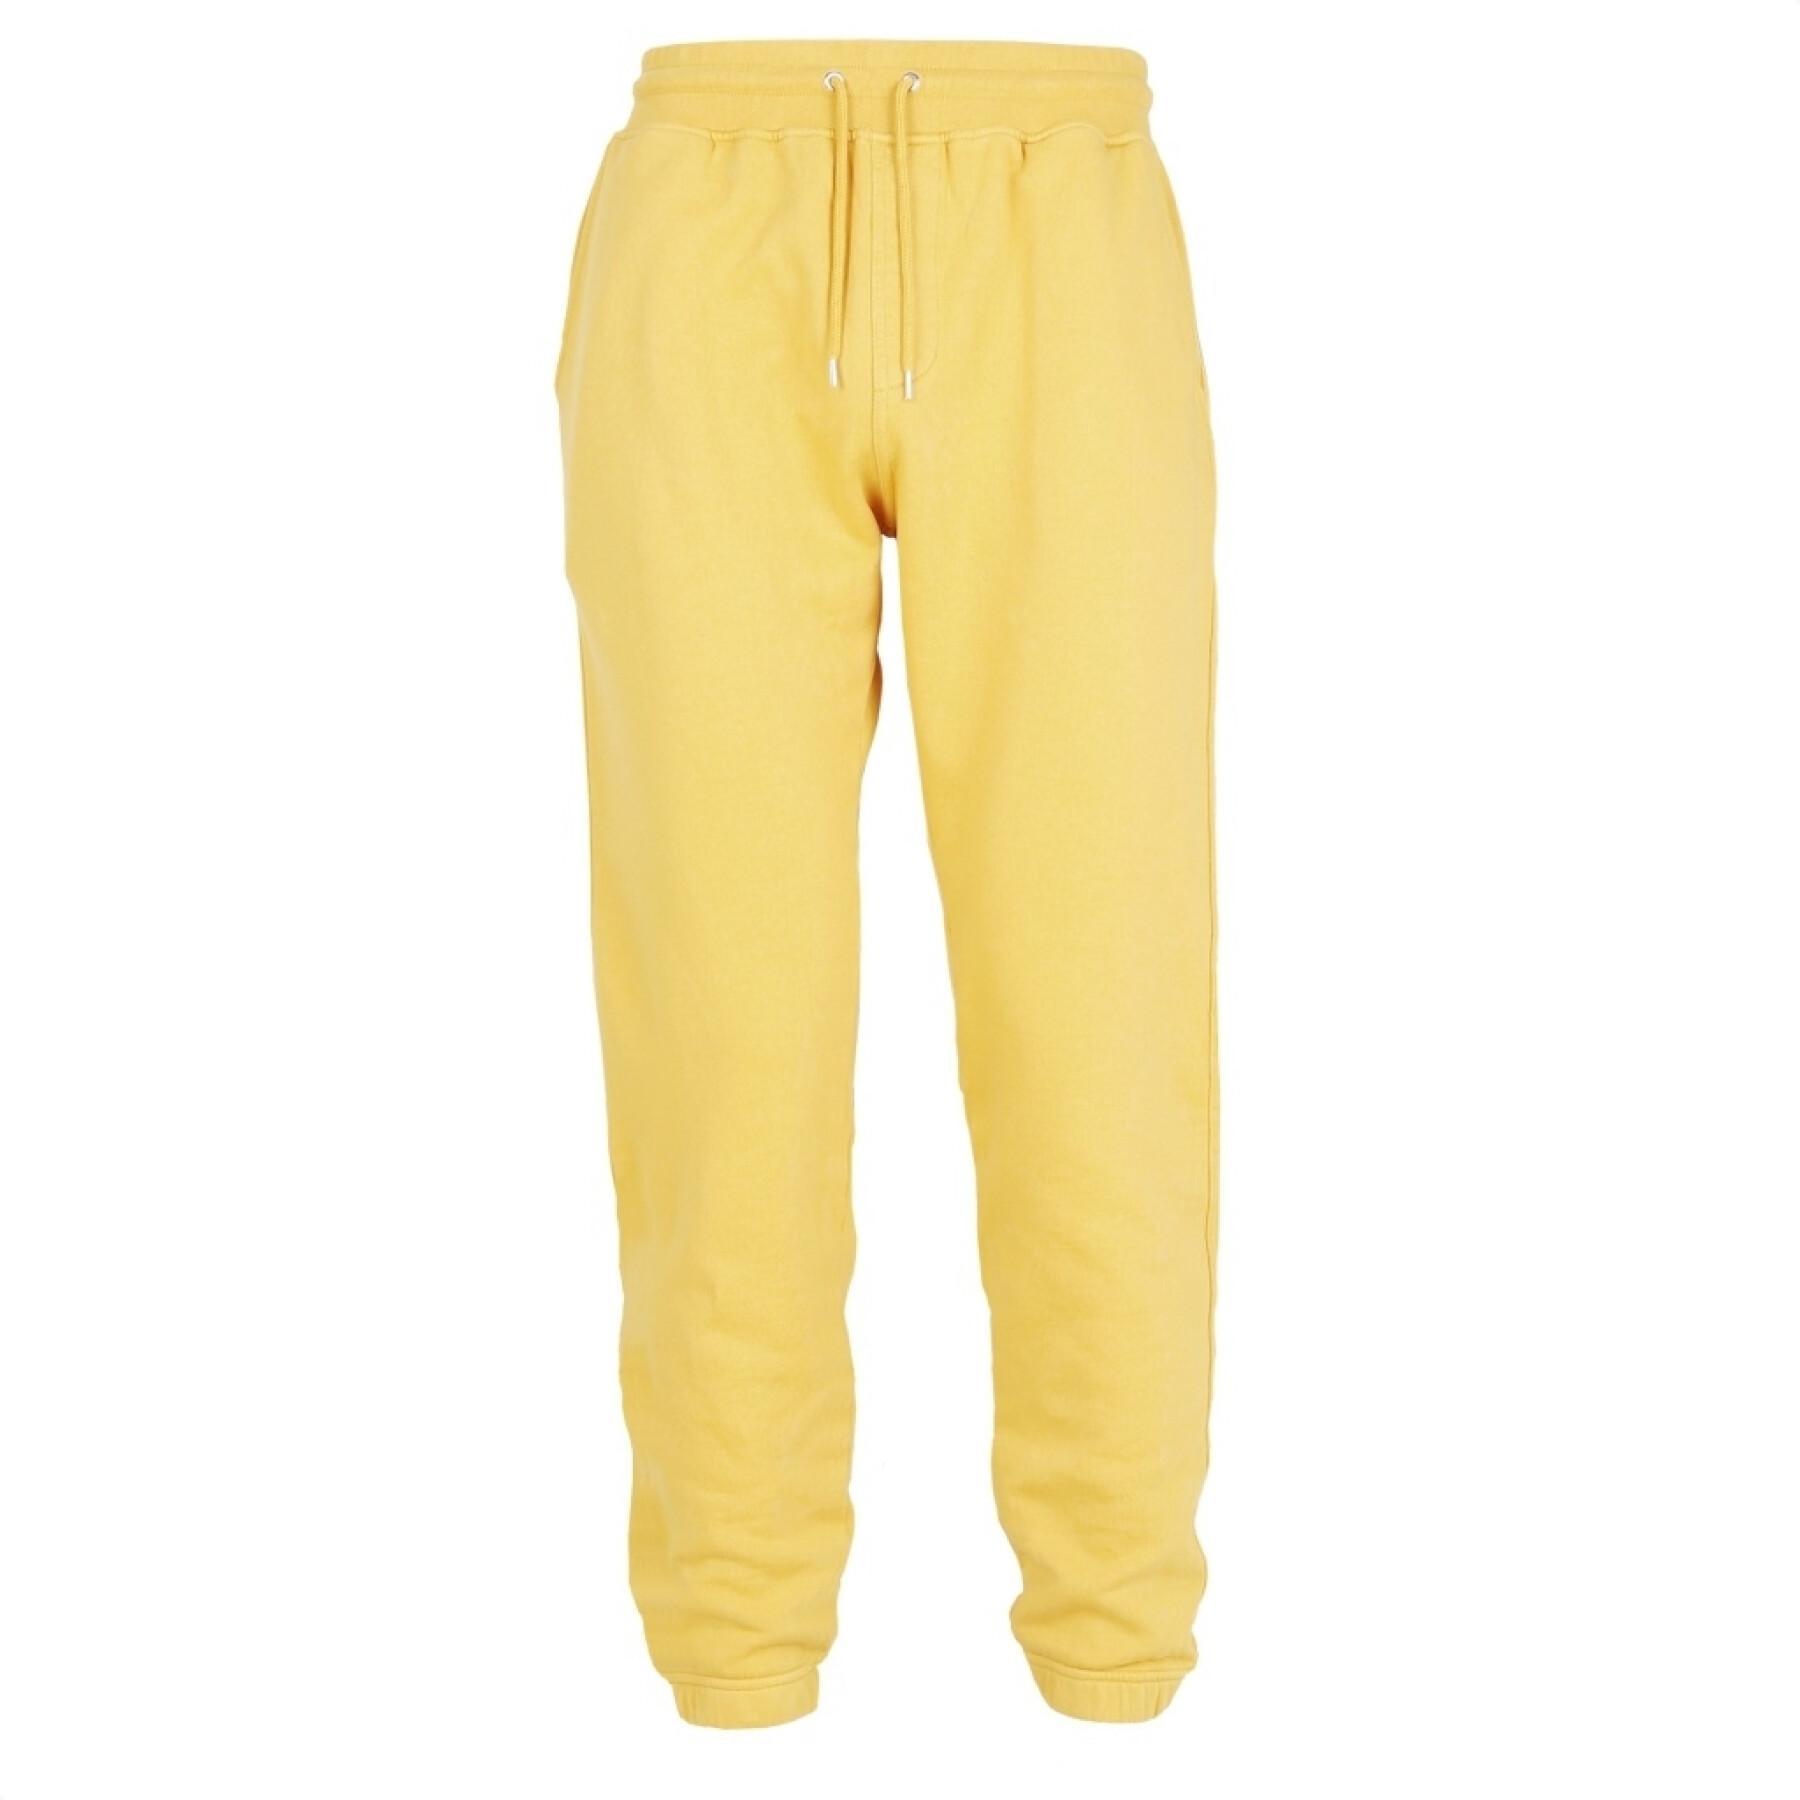 Pantalón de jogging Colorful Standard amarillo limón